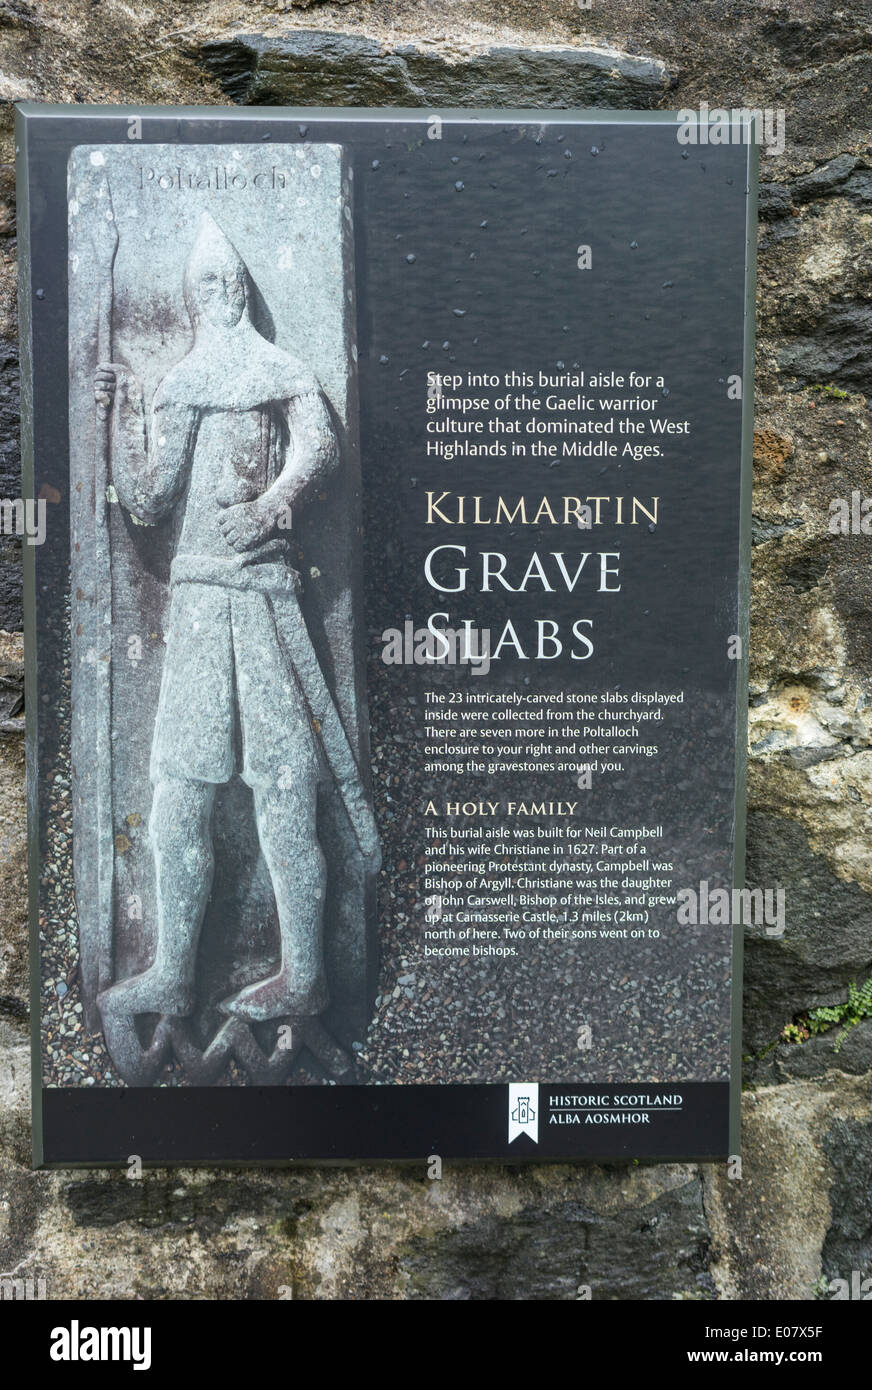 Kilmartin Medieval grave slabs in Scotland. Stock Photo